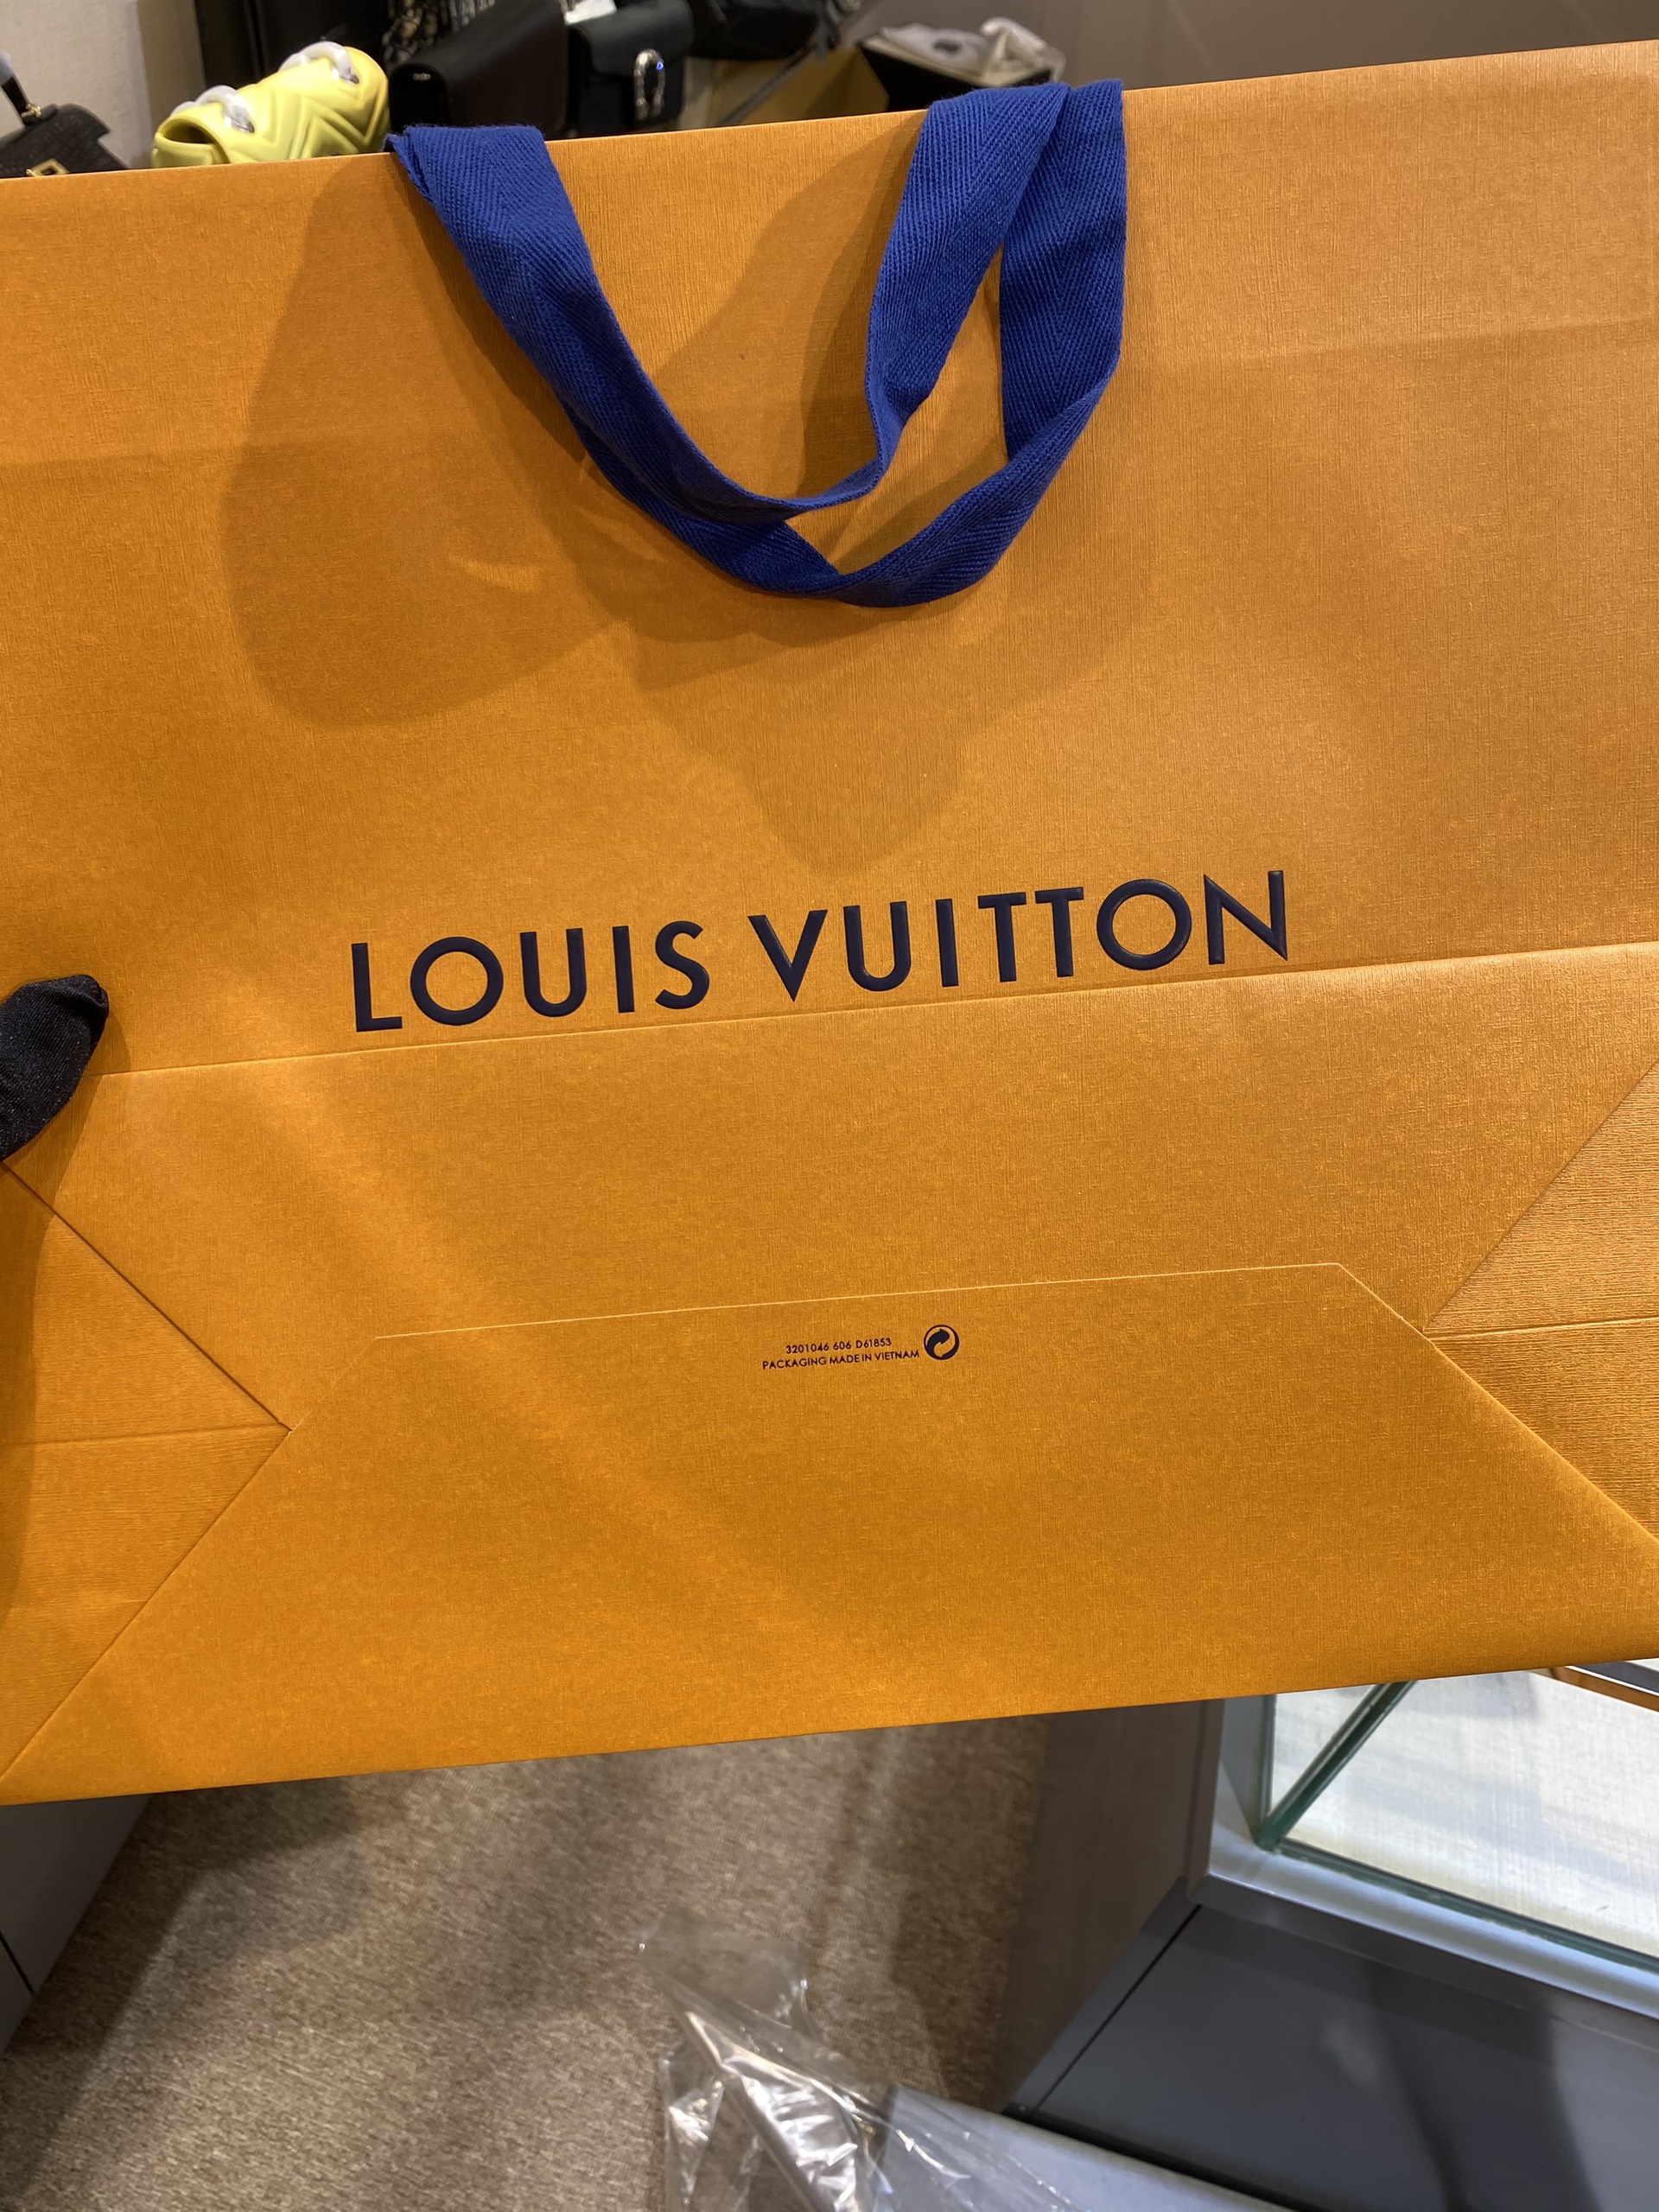 Tham khảo ngay top 3 mẫu khi có ý định mua túi Louis Vuitton